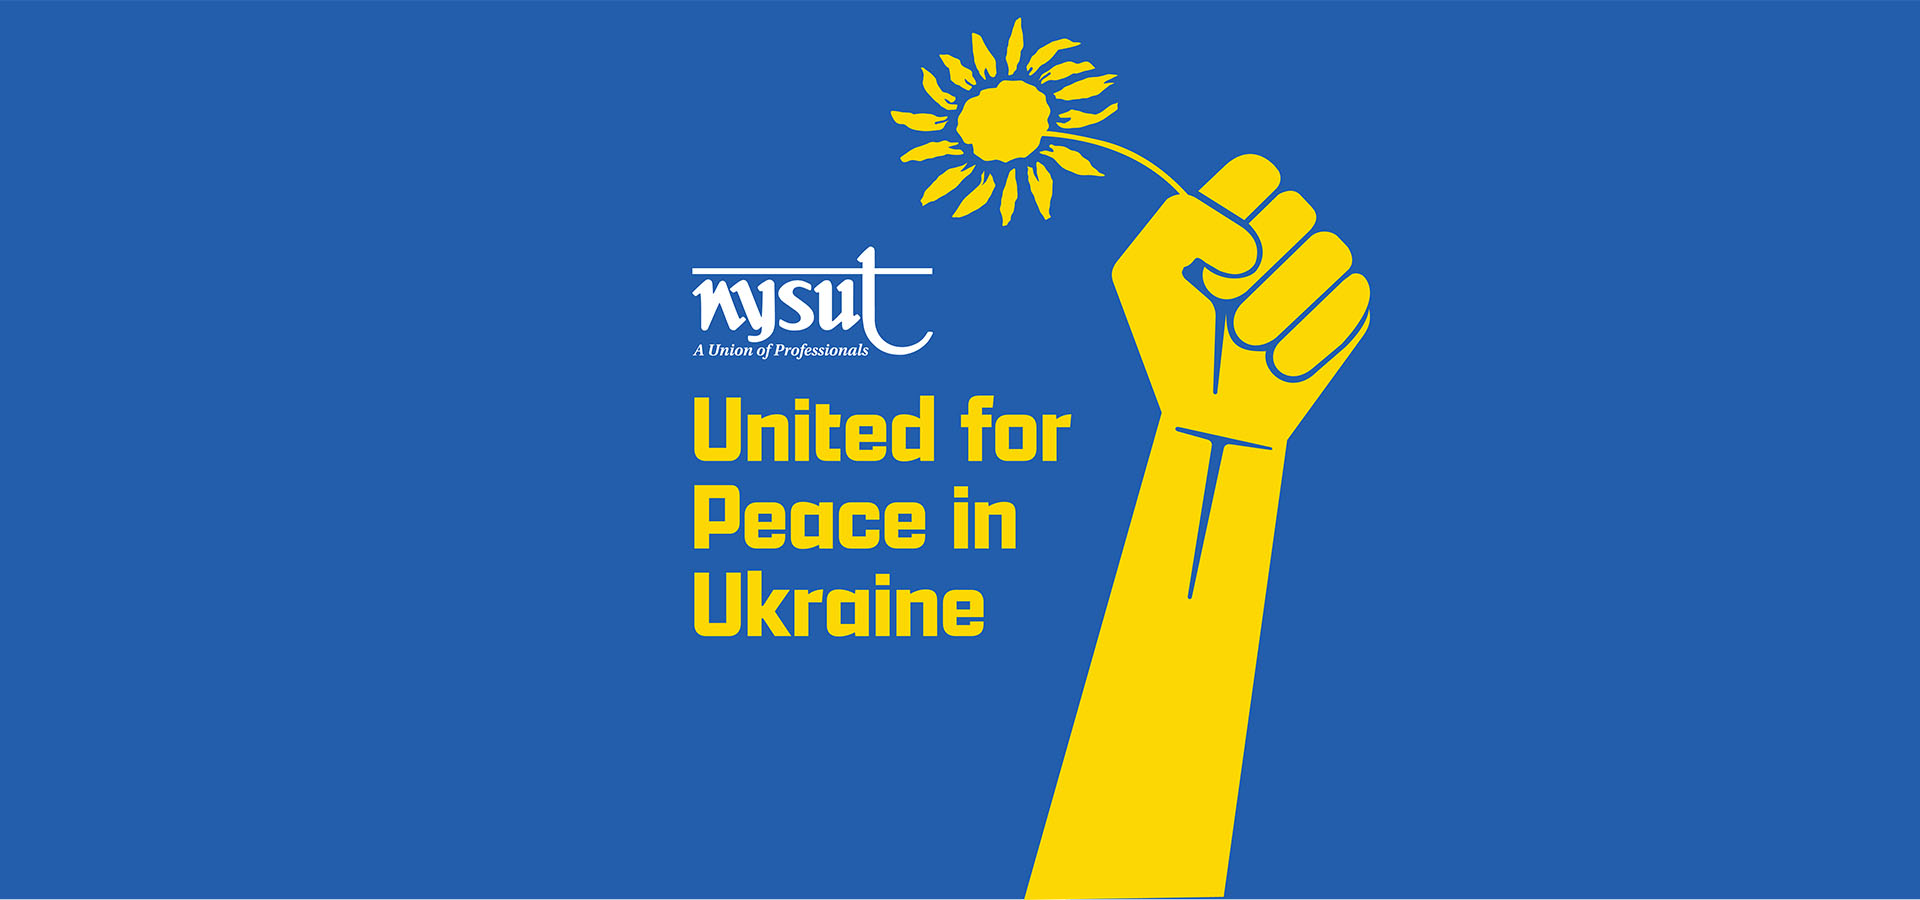 ukraine relief efforts